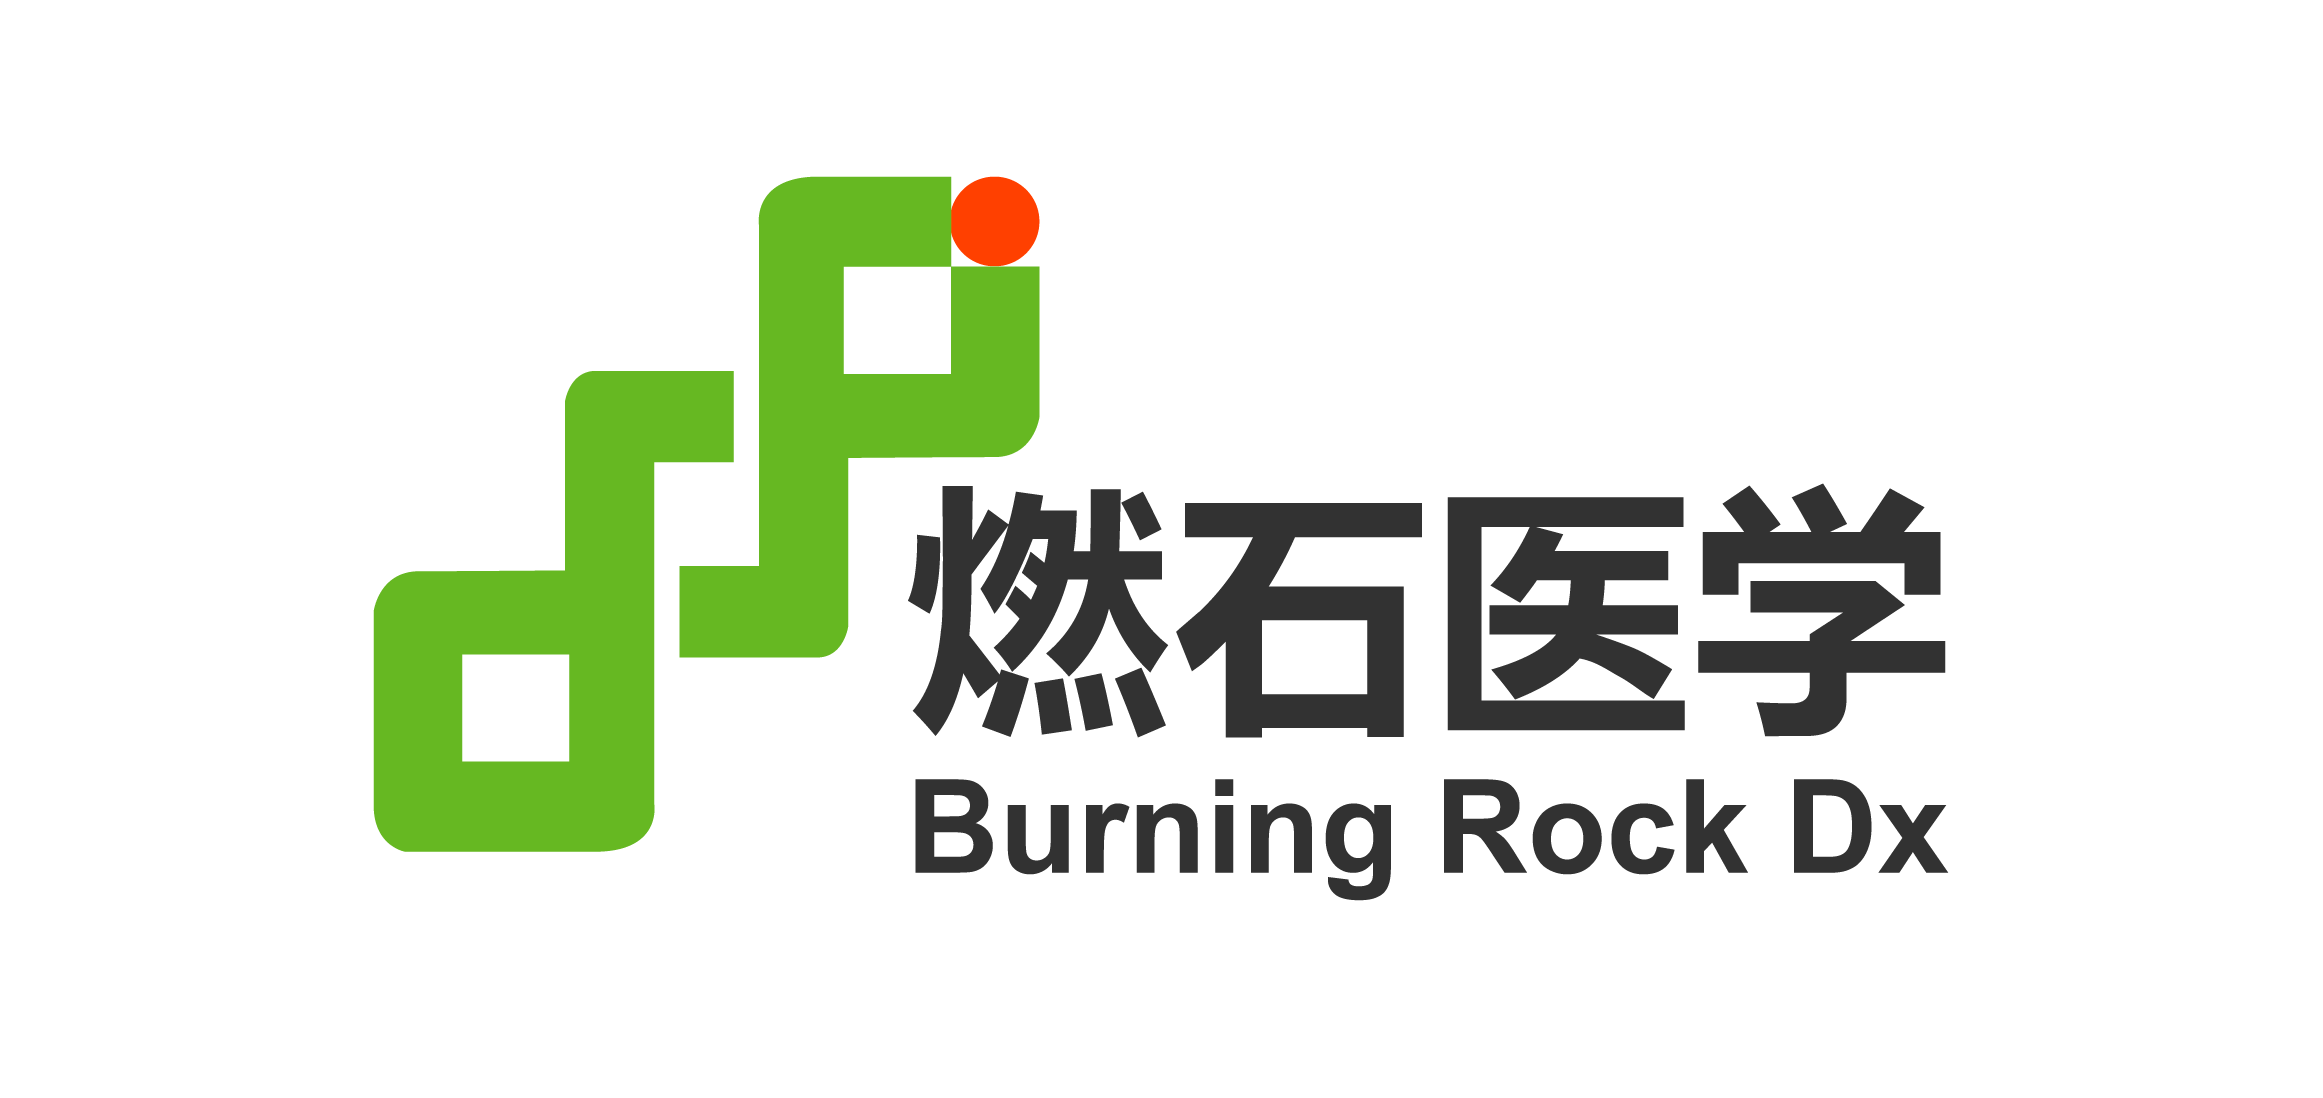 burning rock